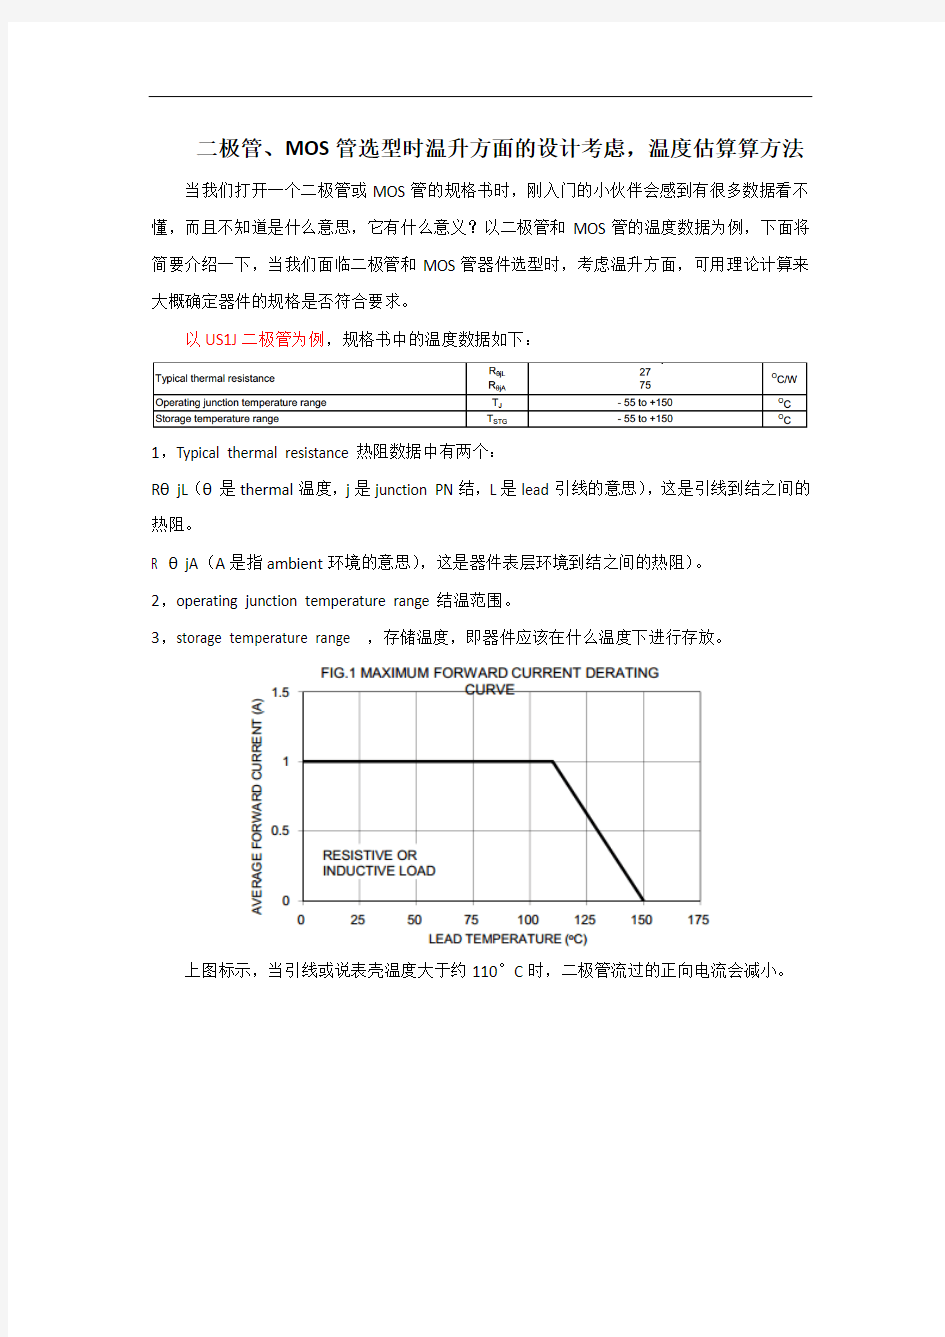 二极管,MOSFET管规格书温度信息的含义